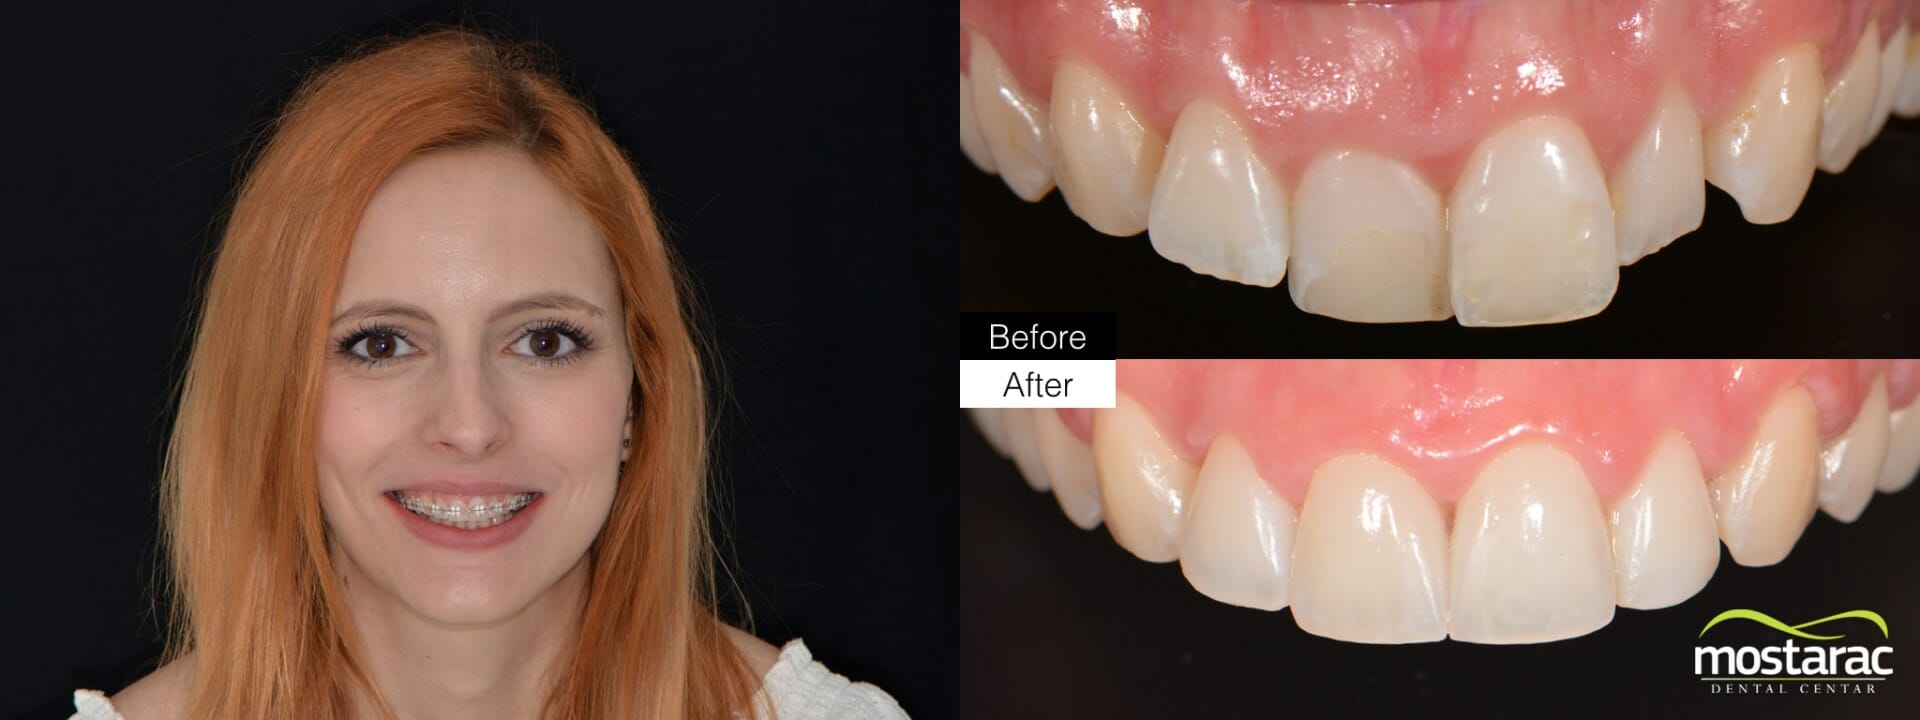 ortodoncija prije poslije